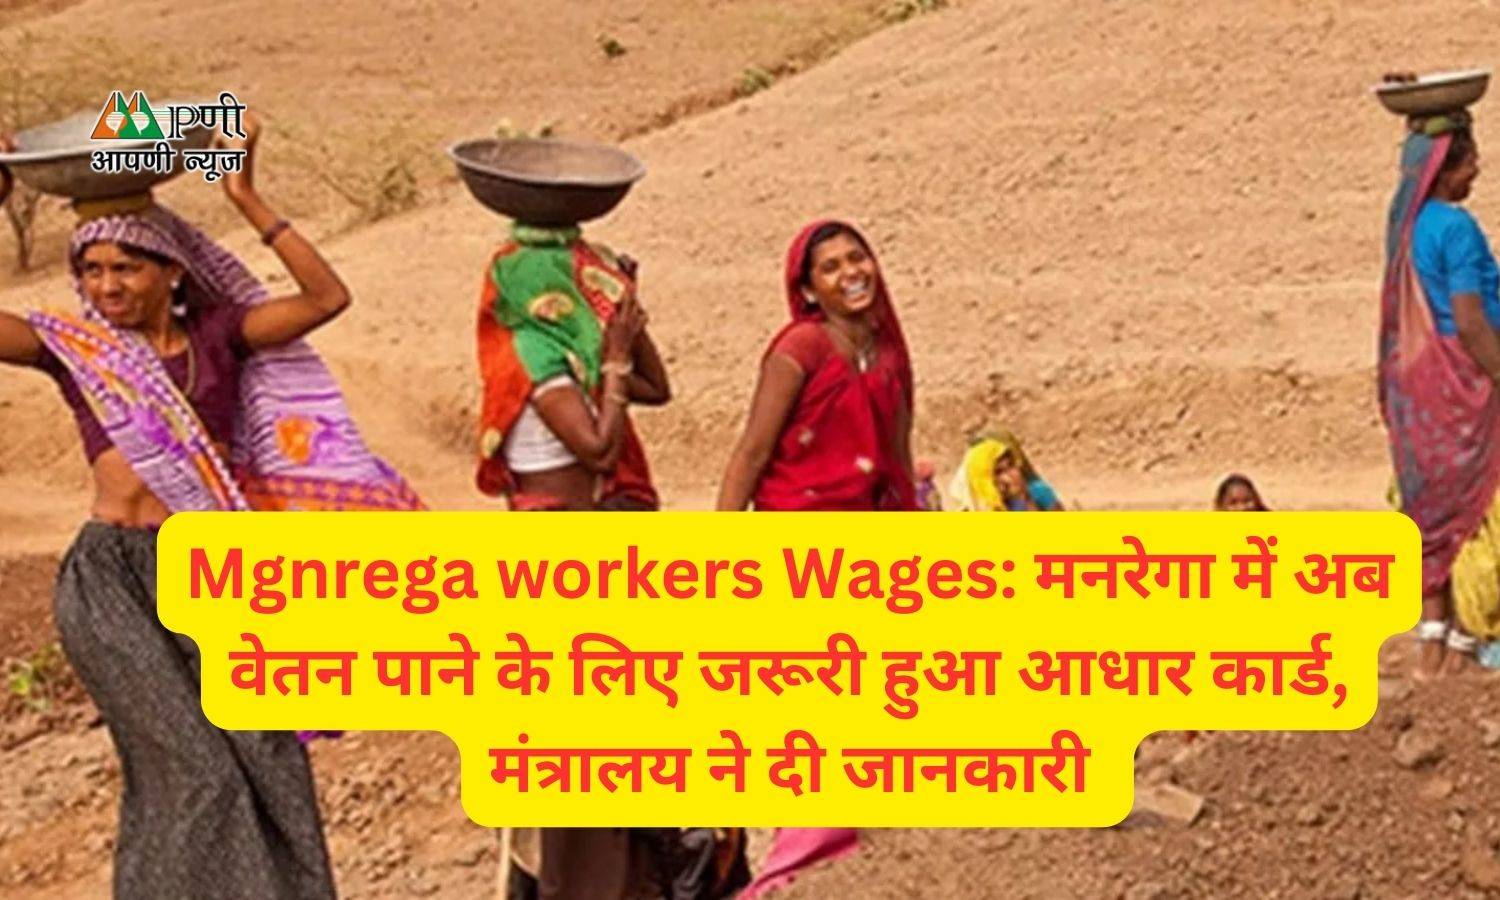 Mgnrega workers Wages: मनरेगा में अब वेतन पाने के लिए जरूरी हुआ आधार कार्ड, मंत्रालय ने दी जानकारी